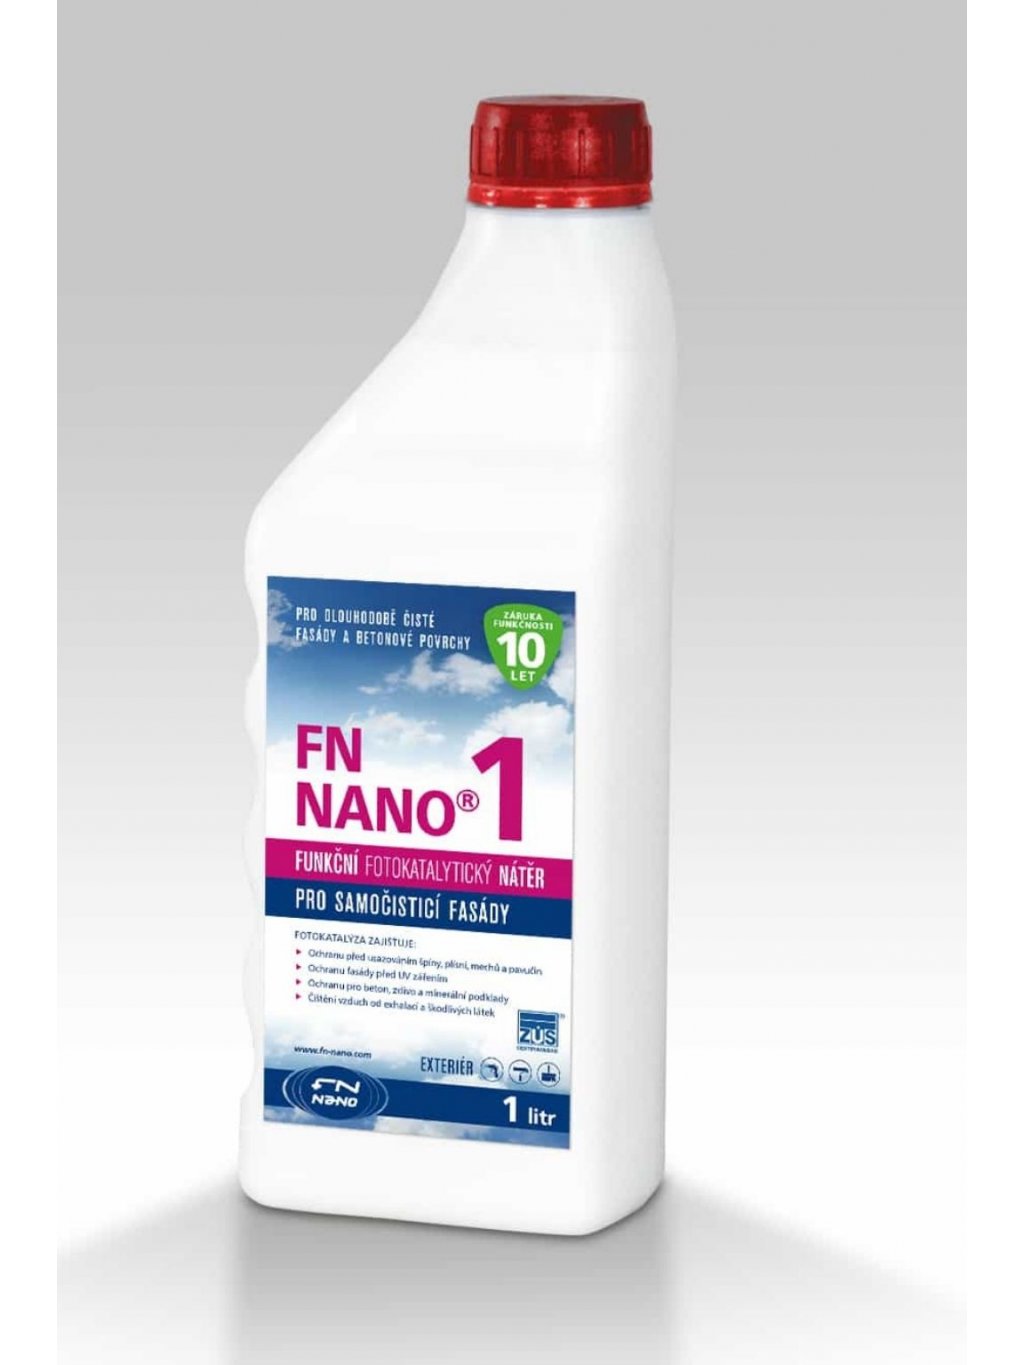 Fotokatalytický nátěr FN NANO®1 pro venkovní použití Objem: 5 litrů